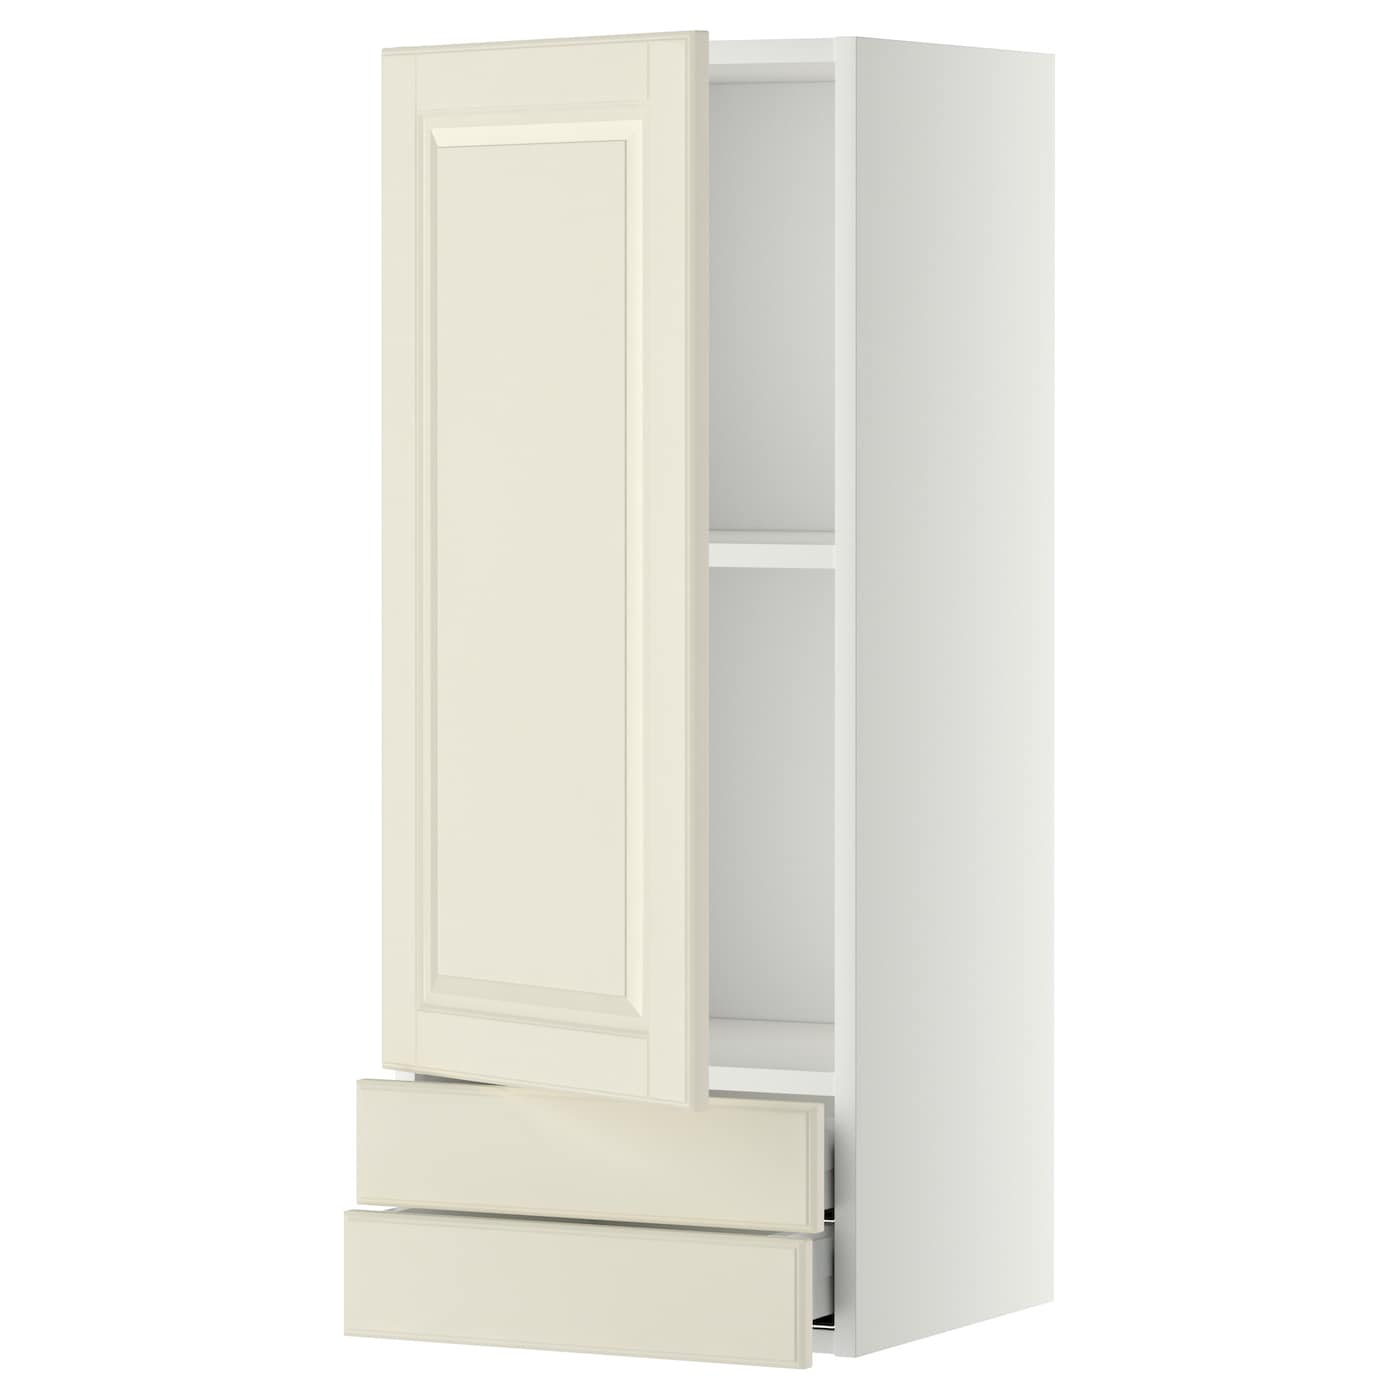 Навесной шкаф с полкой - METOD/MAXIMERA  IKEA/ МЕТОД /МАКСИМЕРА ИКЕА, 100х40 см, белый/светло-бежевый